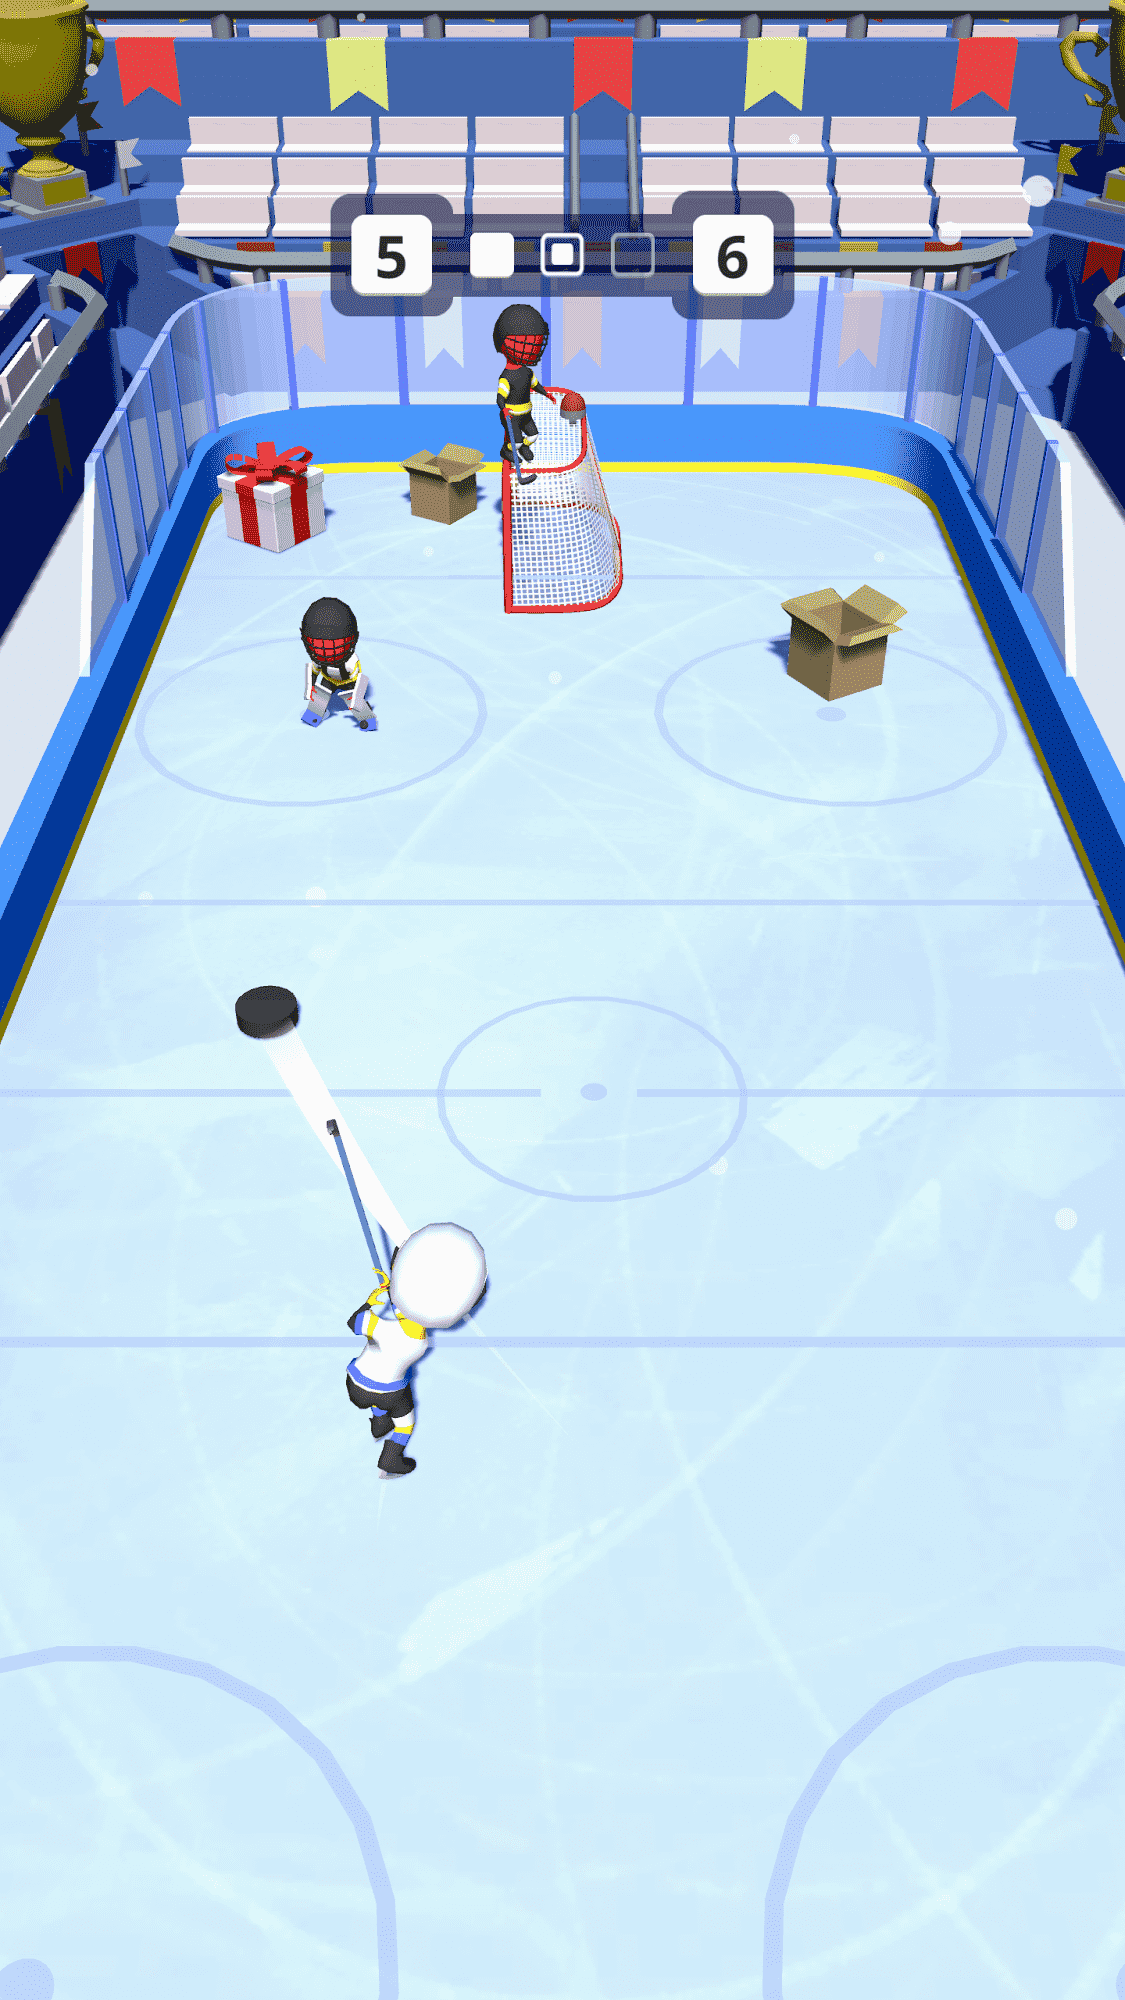 Нужна игра хоккей. Игра" хоккей". Хонкай игра. Хоккей на льду игра. Компьютерные игры хоккей.